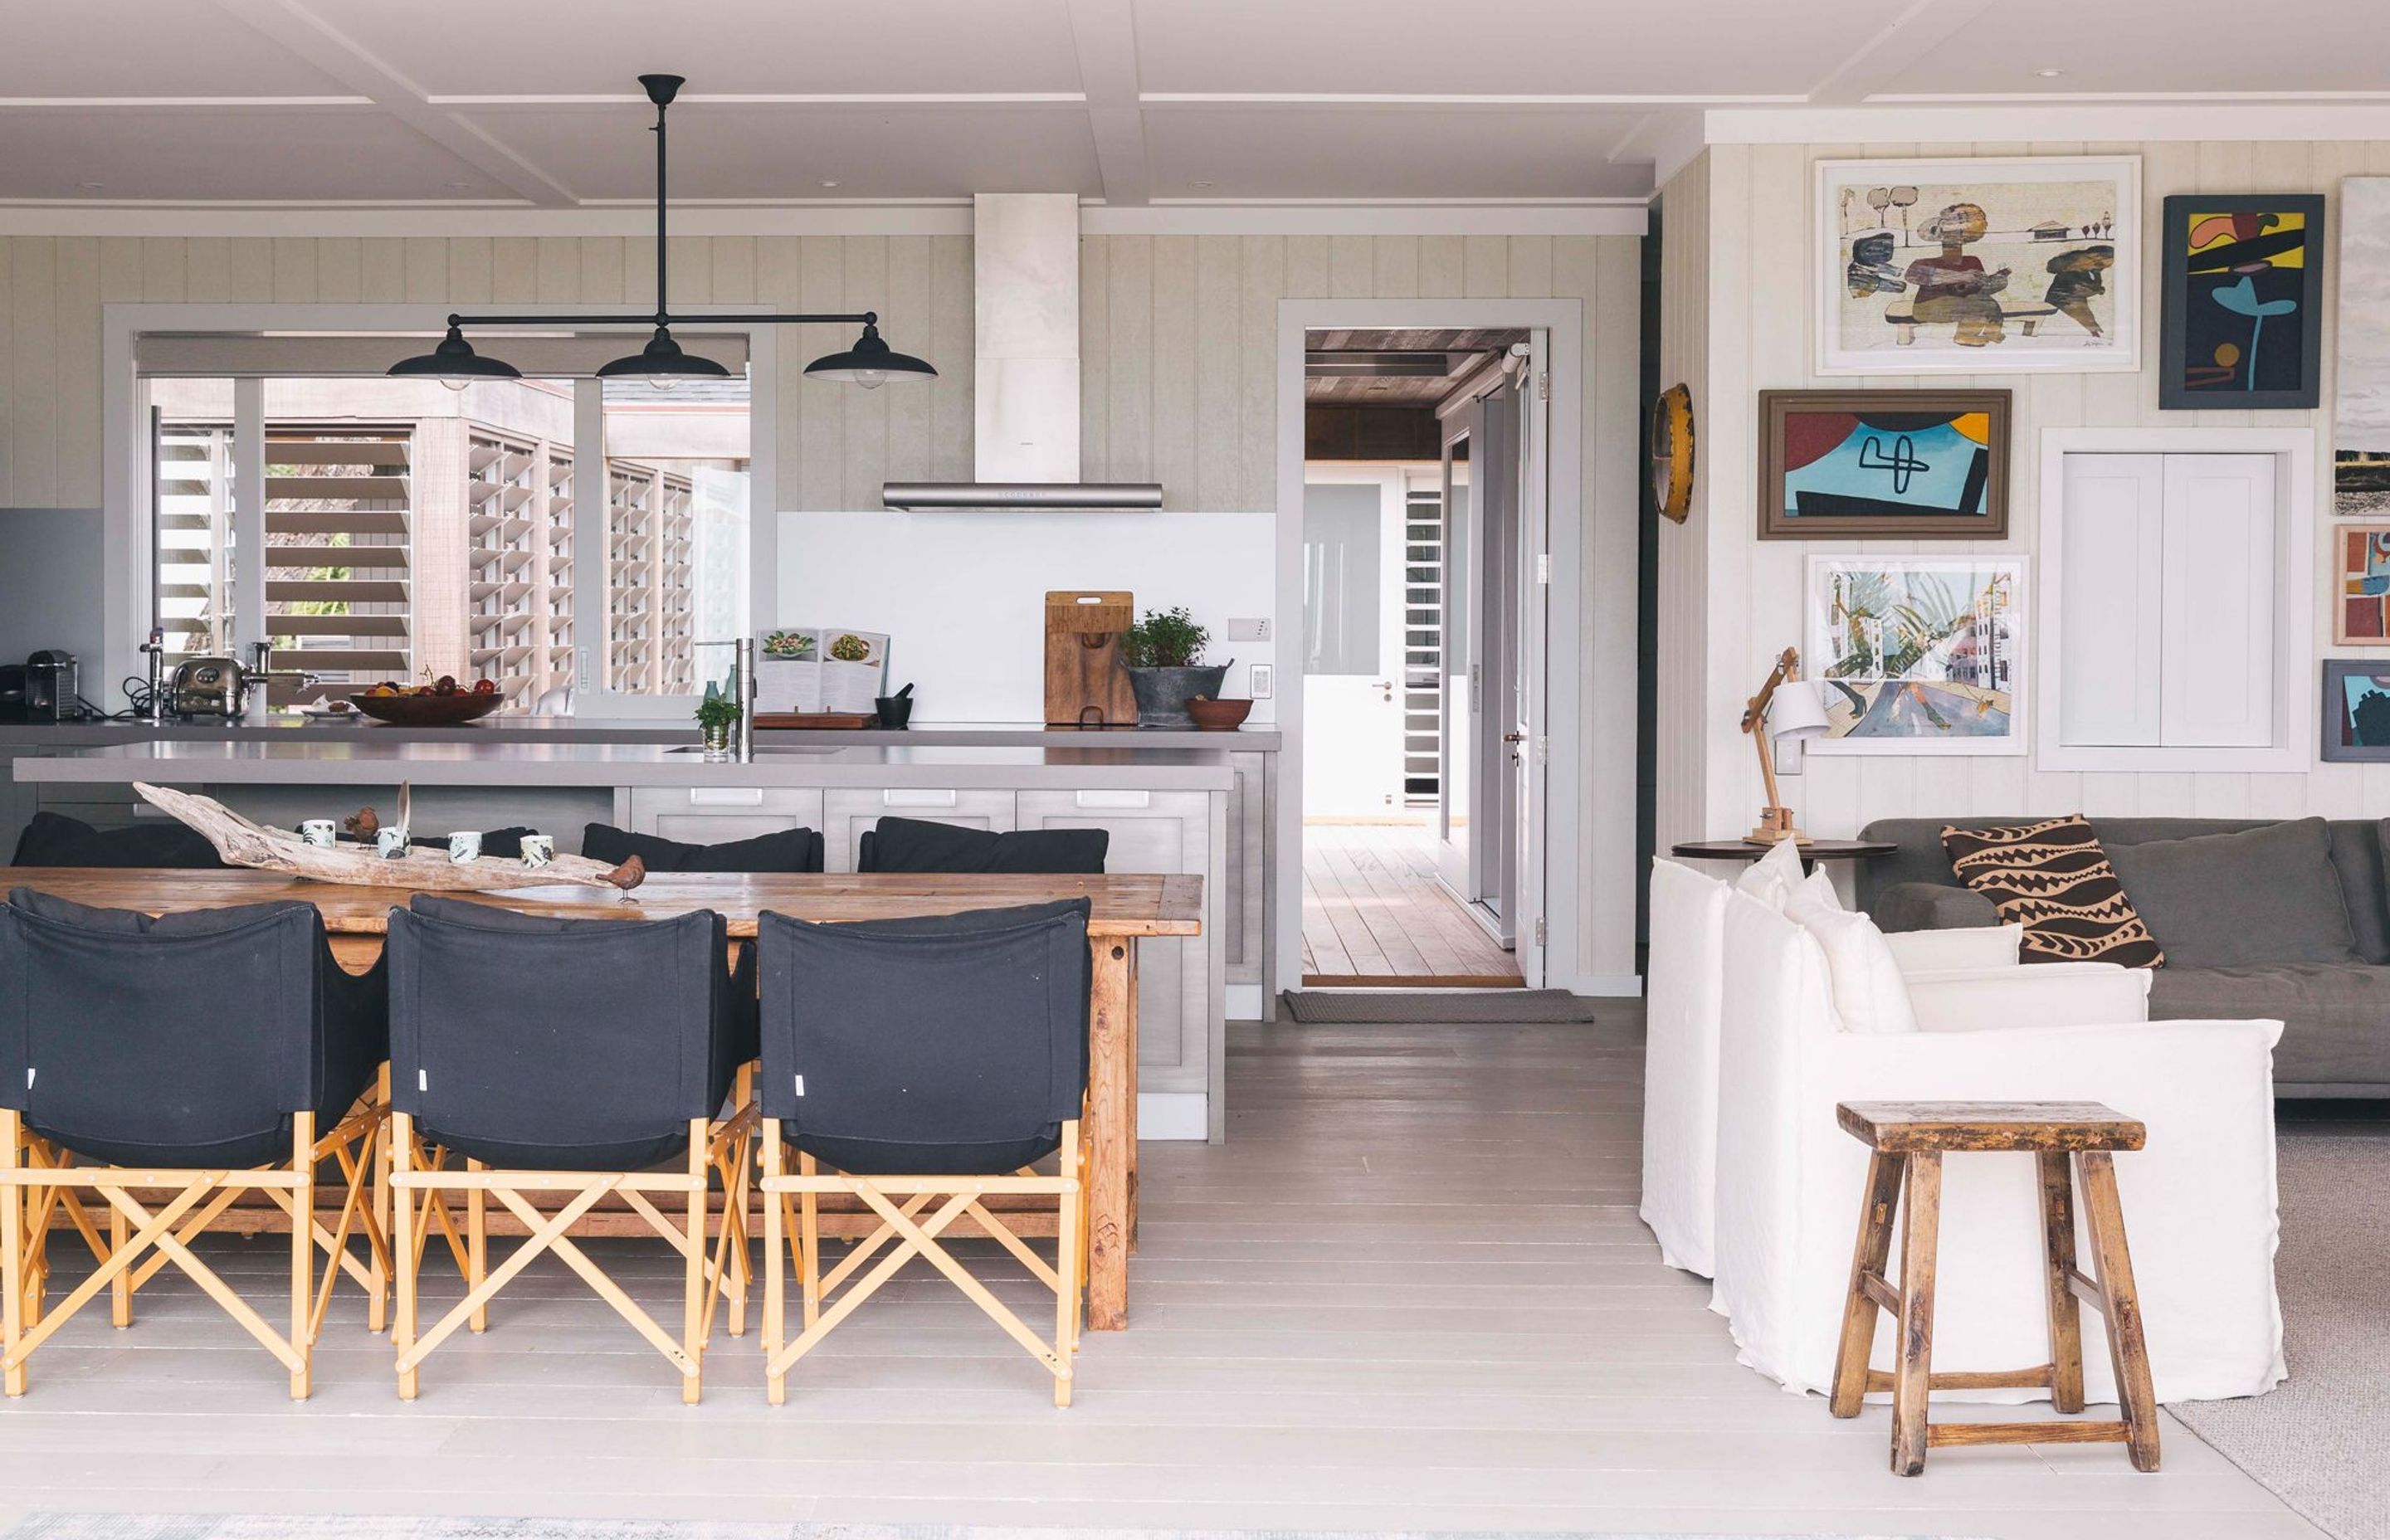 PALM BEACH BOAT HOUSE – WAIHEKE ISLAND